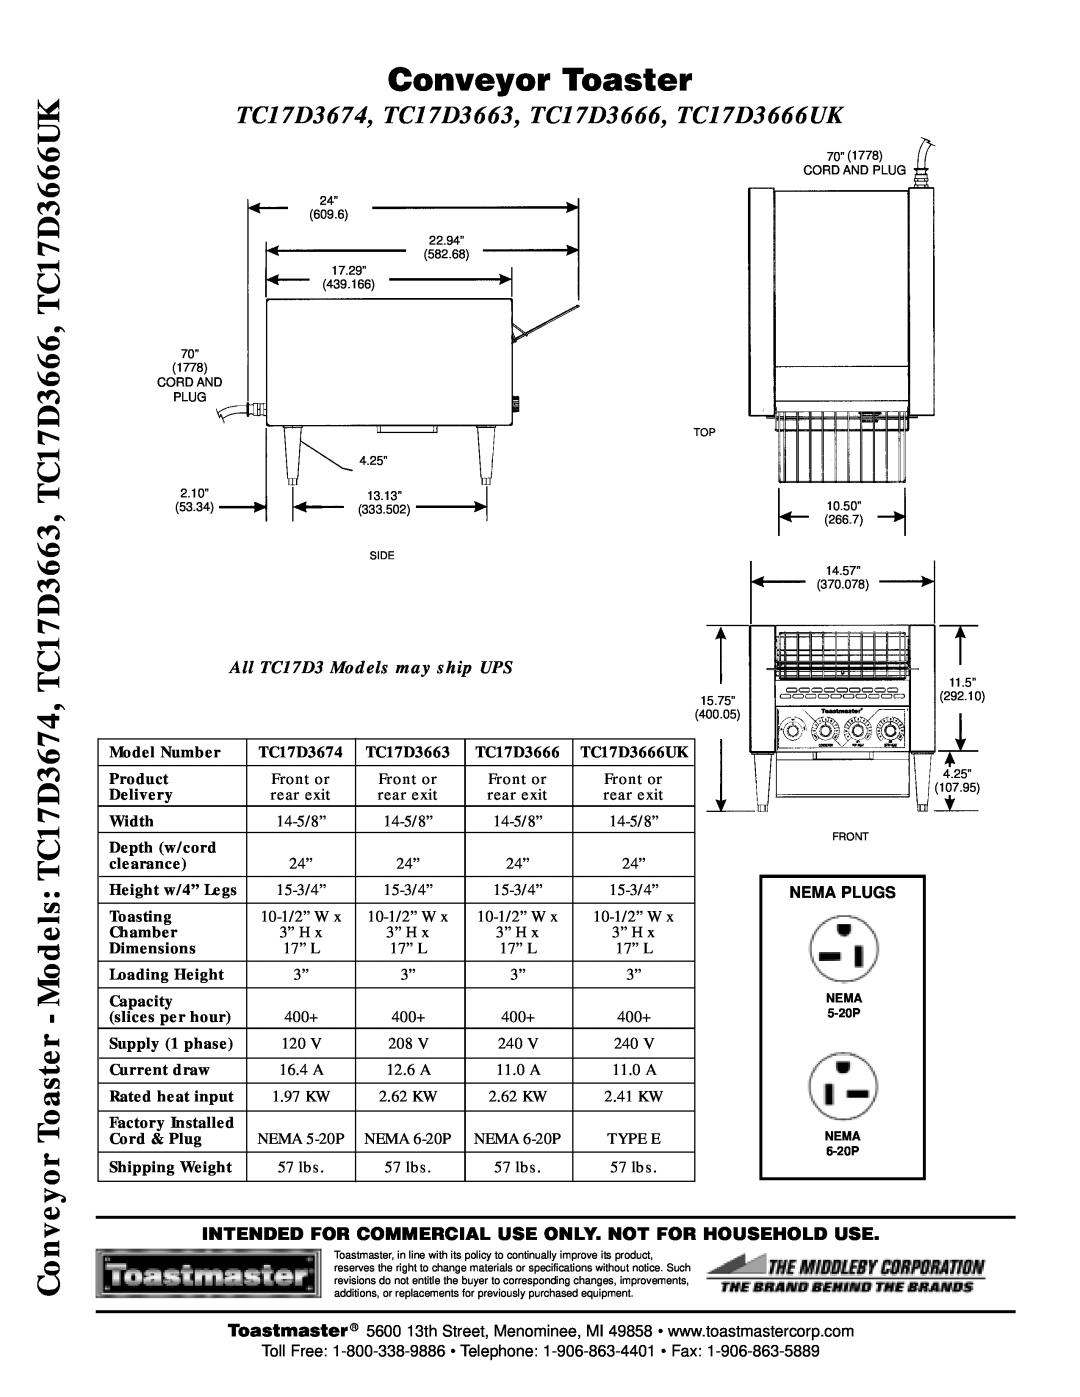 Toastmaster Conveyor Toaster, TC17D3674, TC17D3663, TC17D3666, TC17D3666UK, All TC17D3 Models may ship UPS, Nema Plugs 